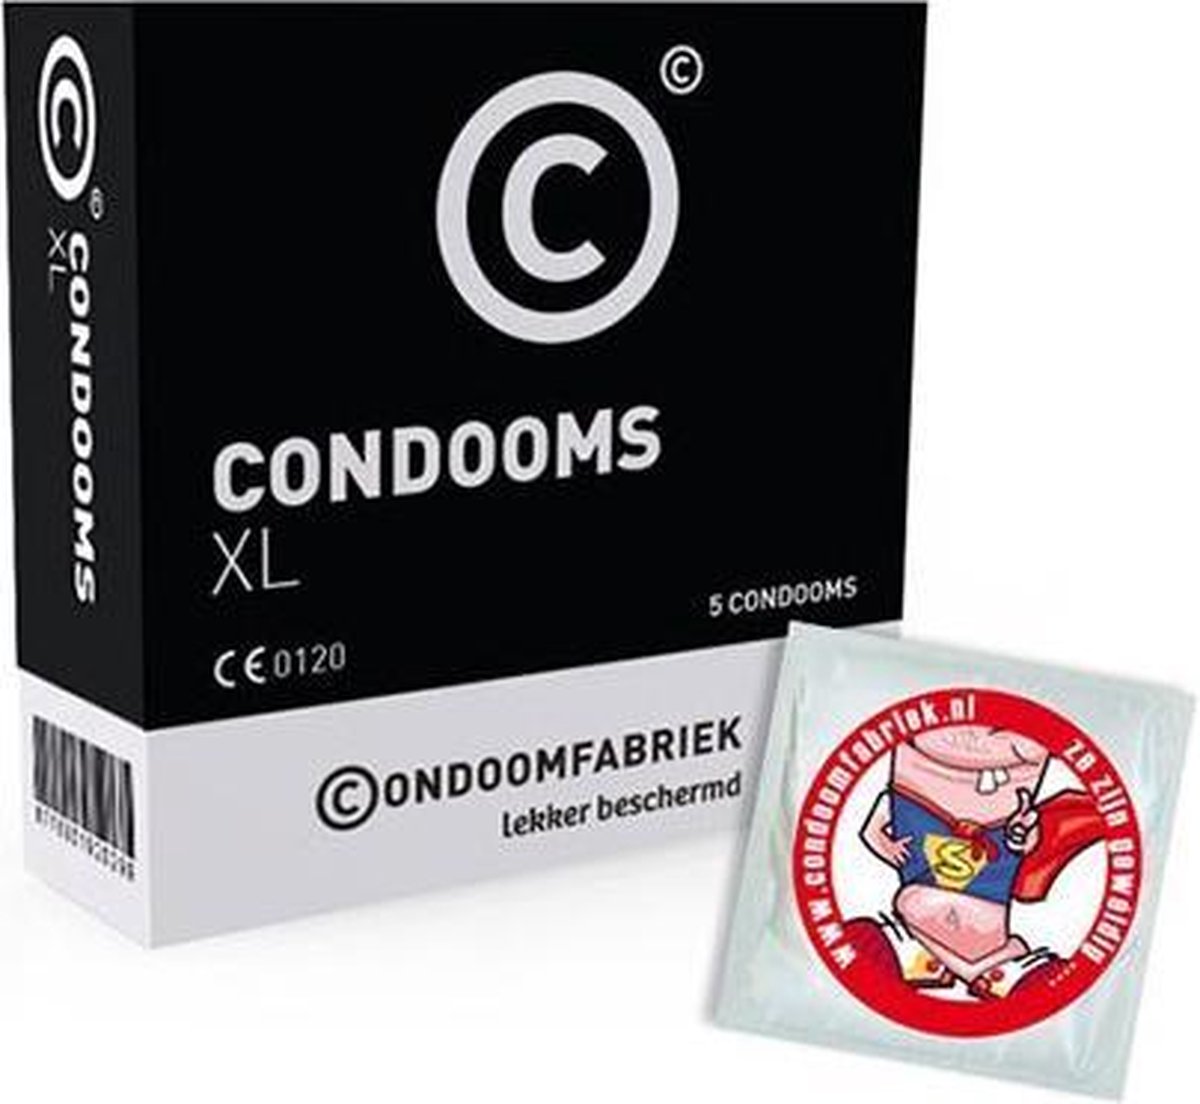 Condoomfabriek - XL condoom - 5 stuks